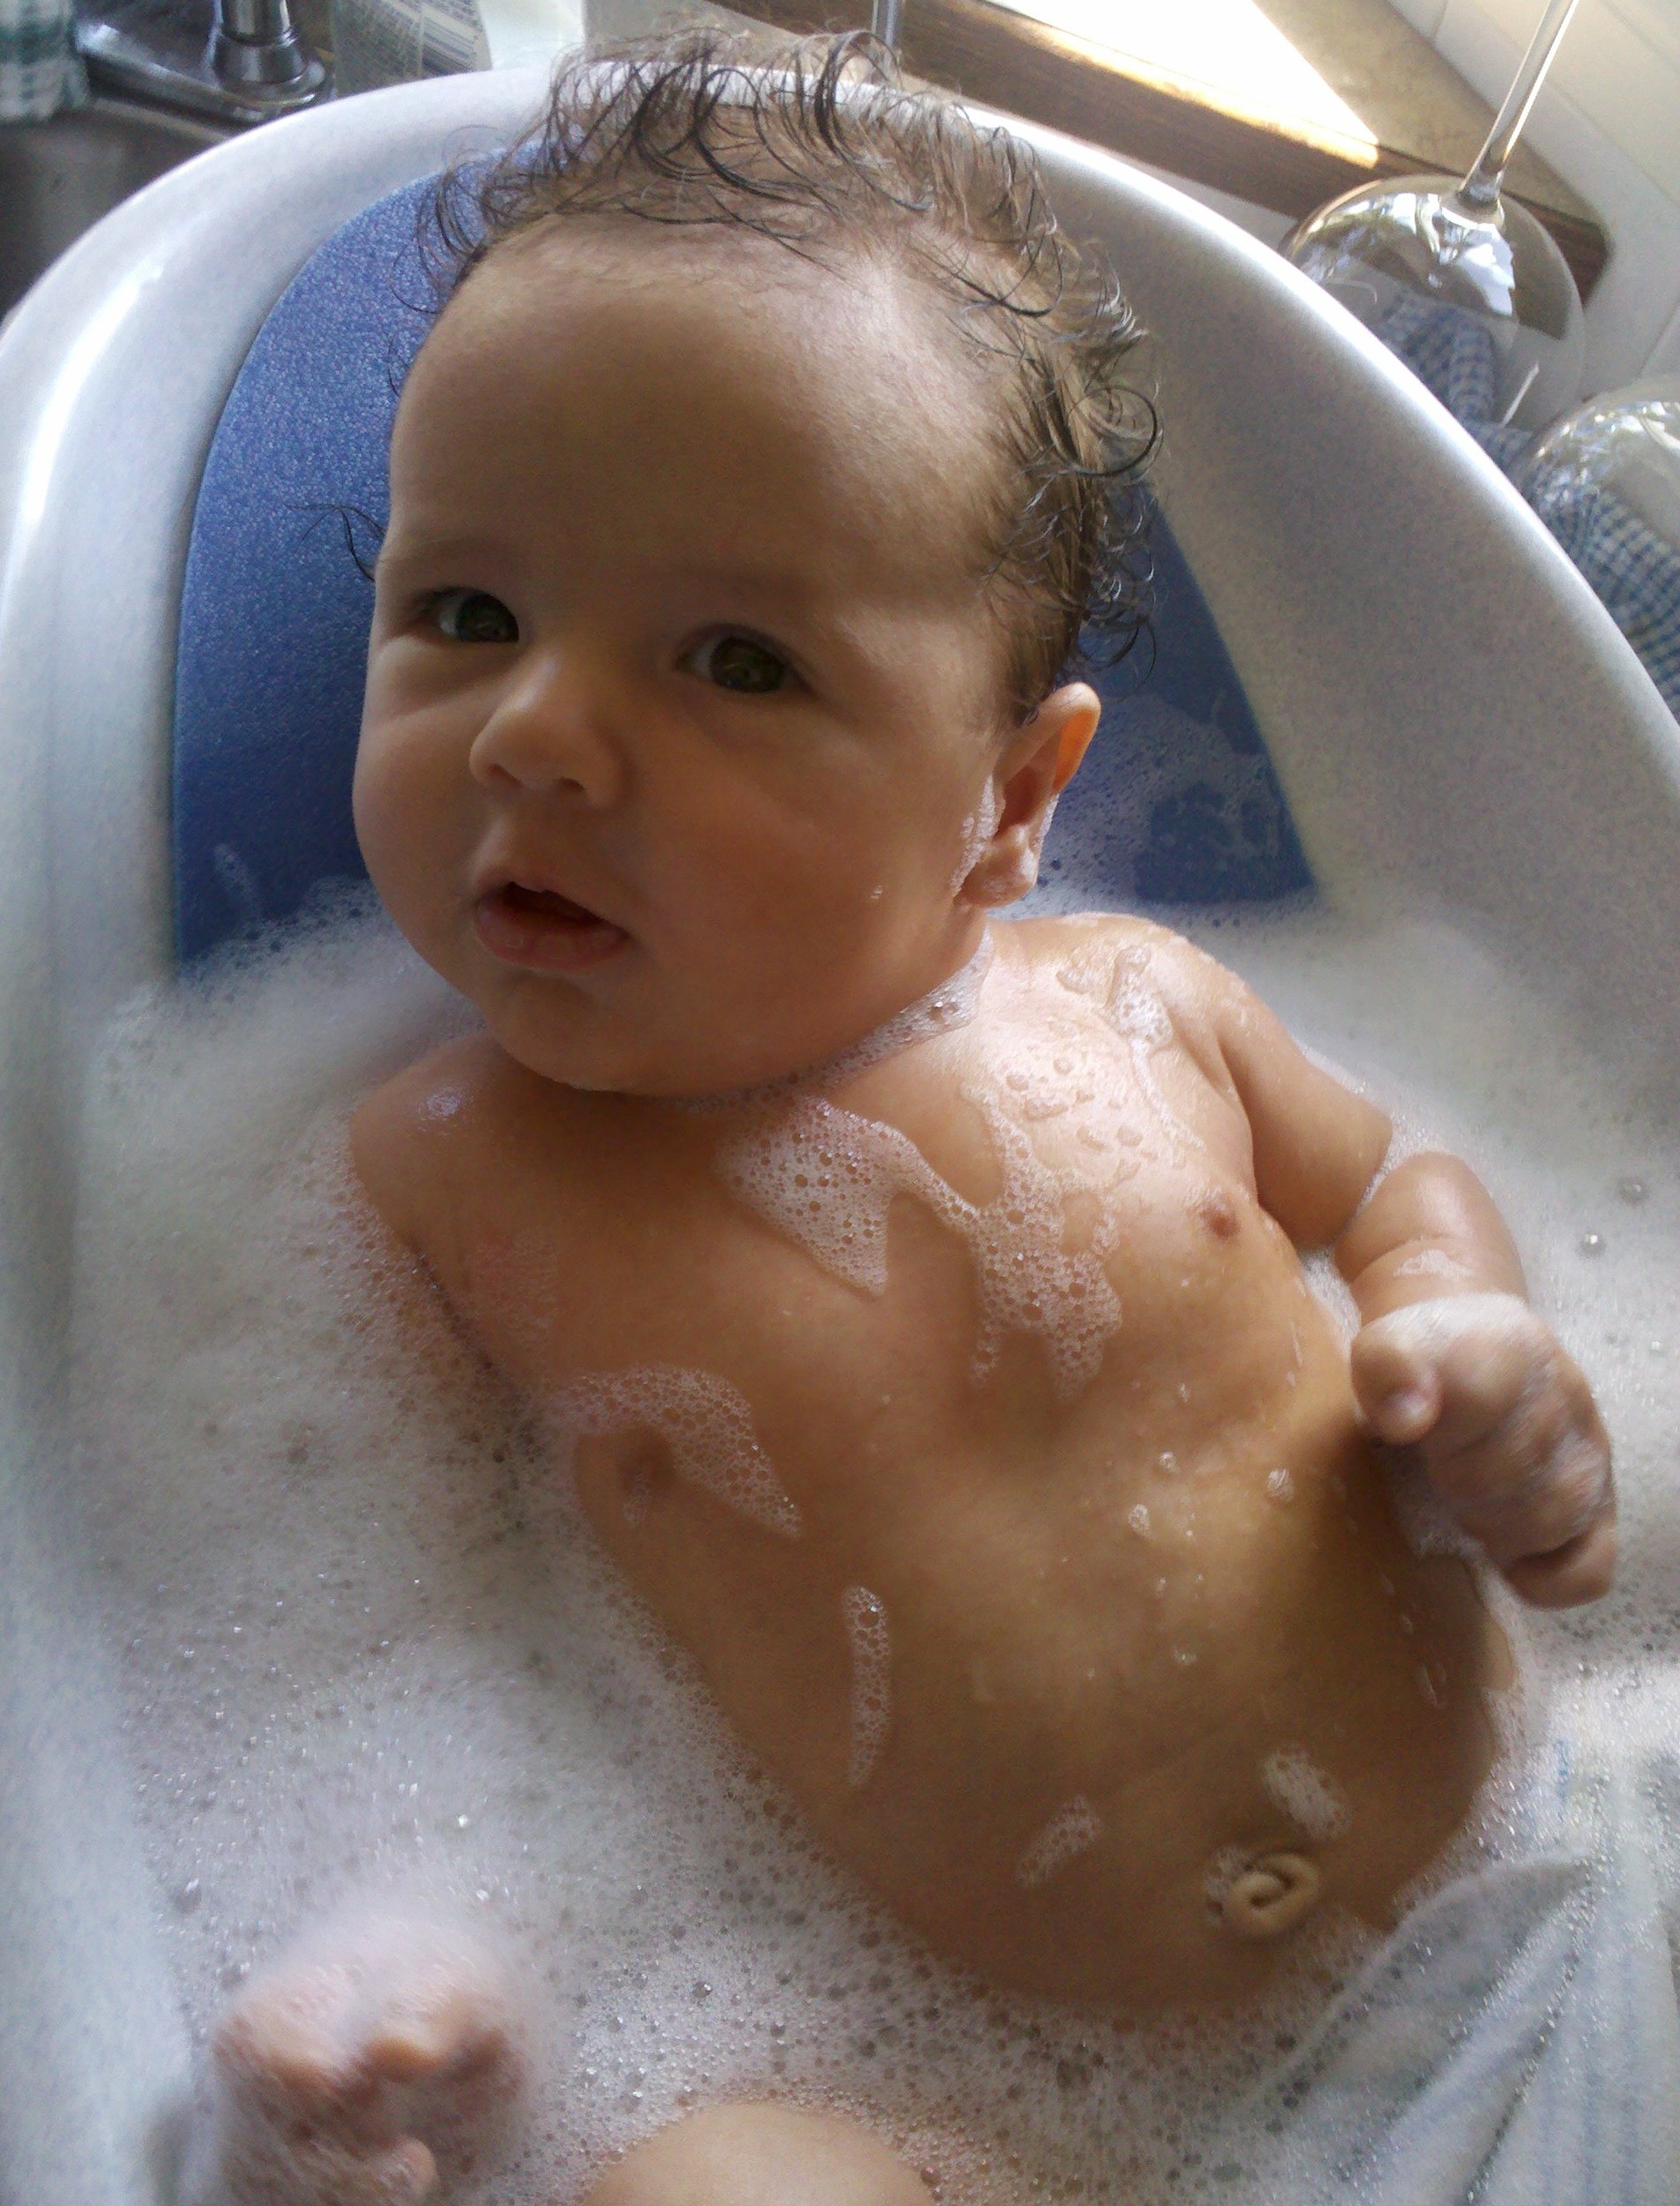 Zane in the tub